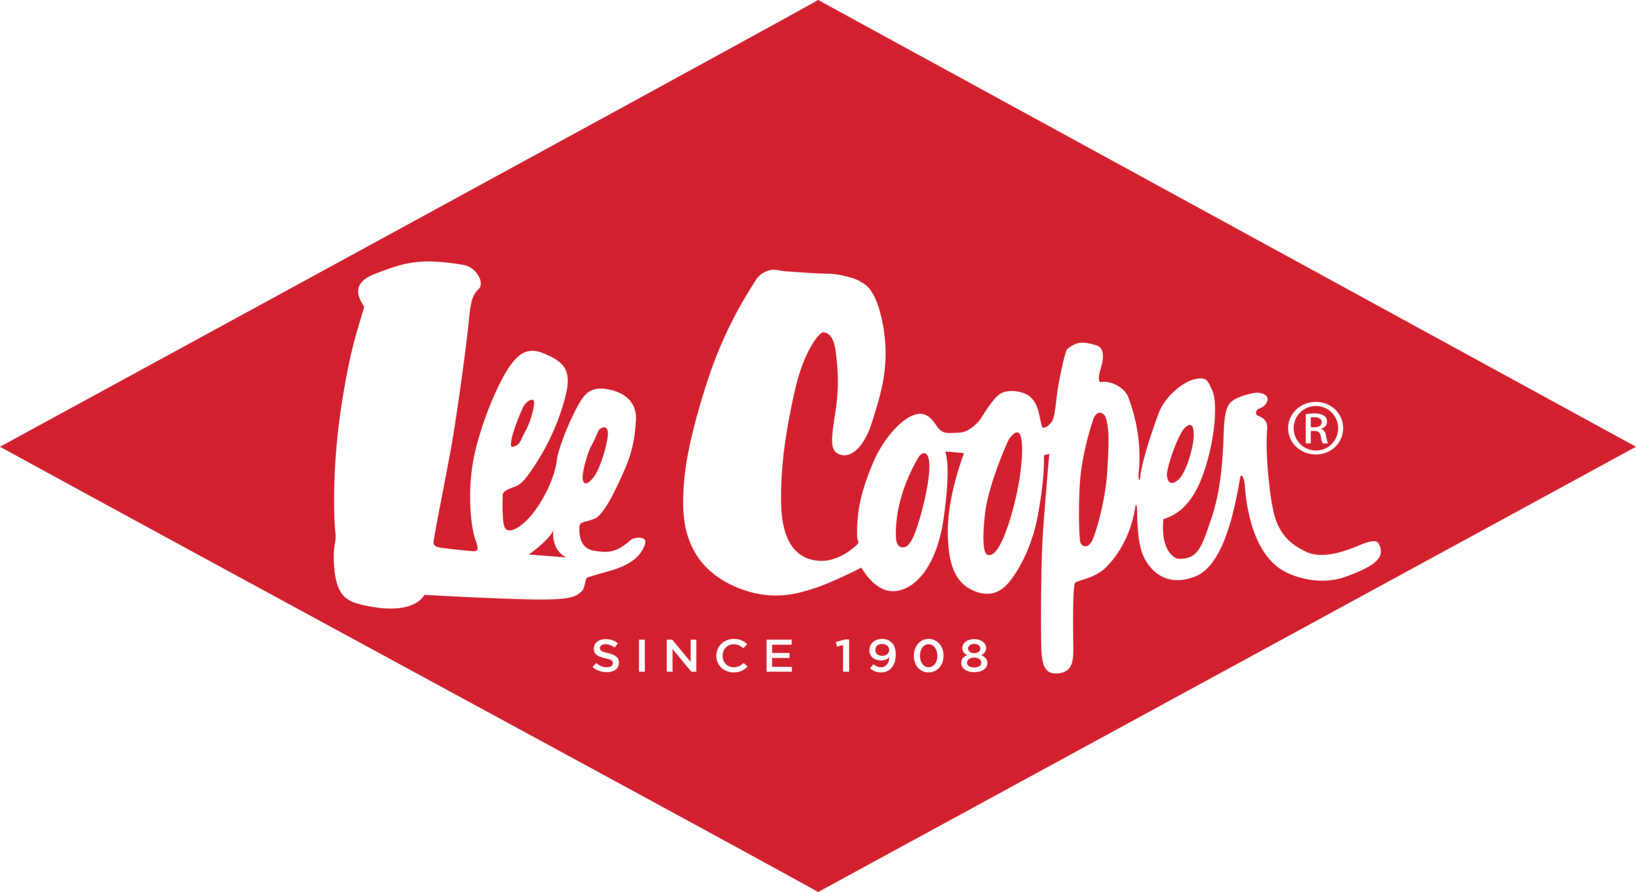 Lee Cooper, vente en ligne vétement, prét à porter maroc